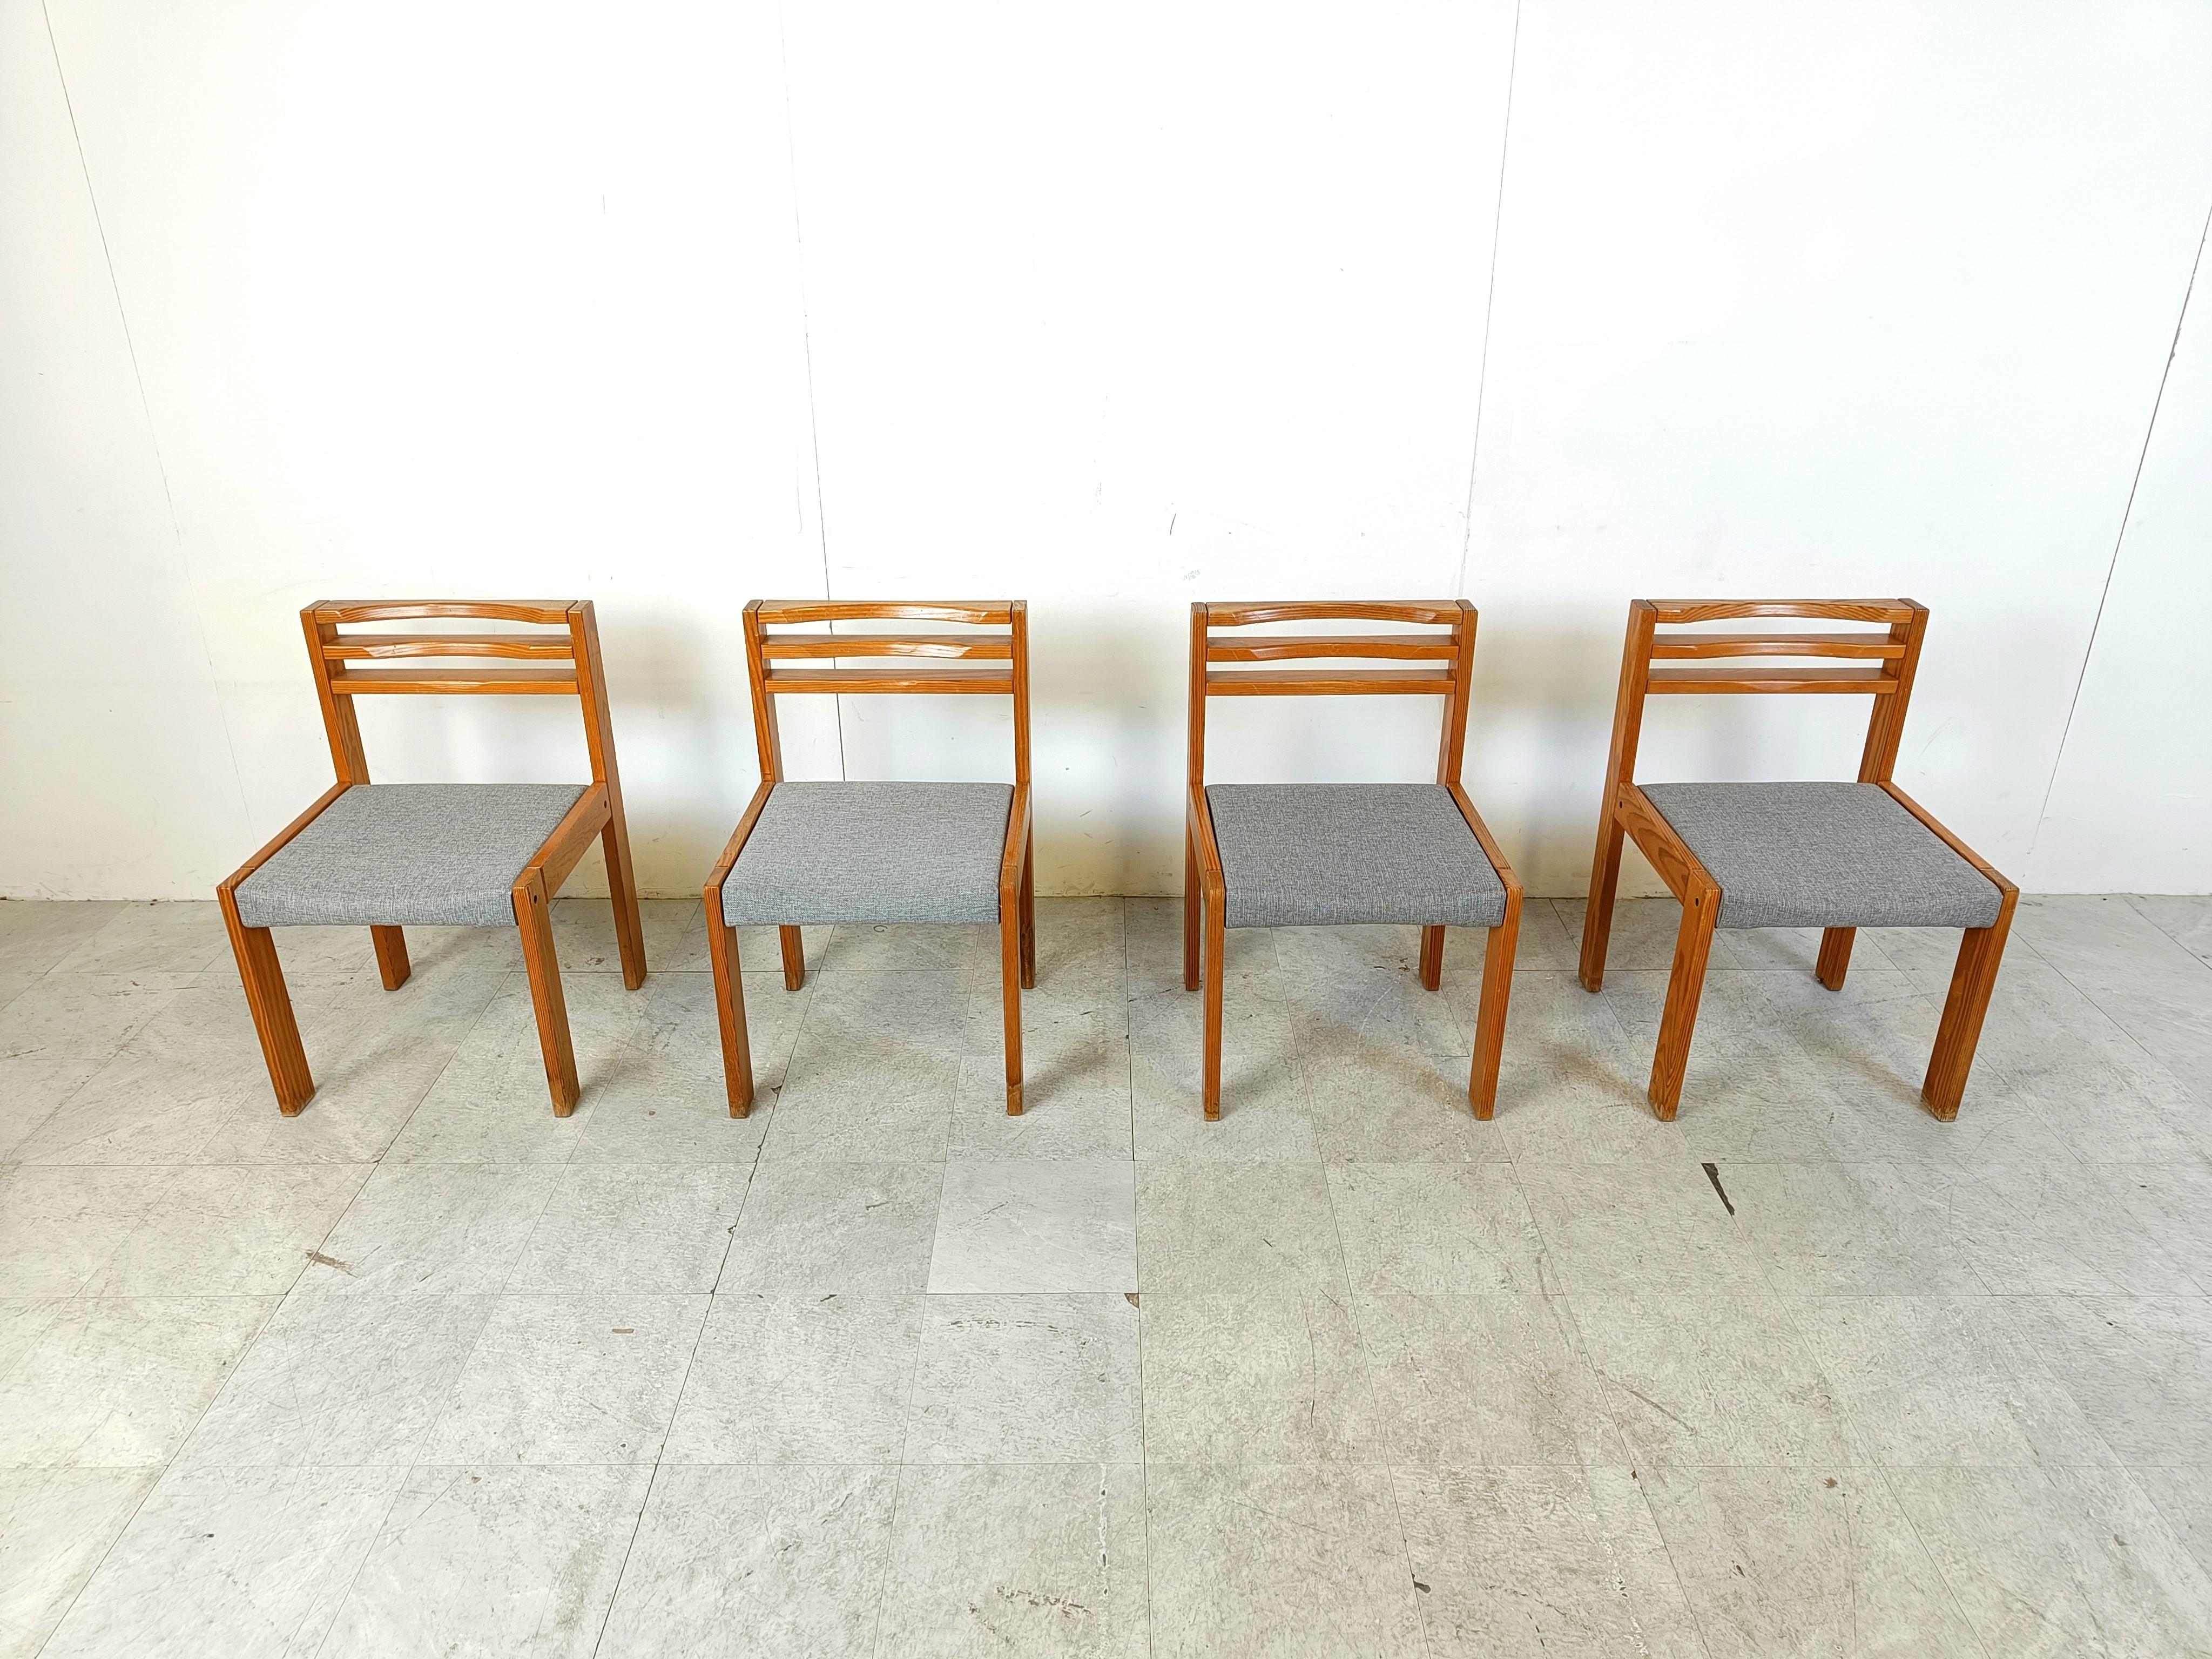 4 Esszimmerstühle SG 1200, entworfen von Cees Braakman für Pastoe.

Die Stühle haben ein Gestell aus Kiefernholz und graue Stoffsitze.

Kühle und stilvolle zeitlose Stühle

1970er Jahre - Die Niederlande

Höhe: 80cm/31.49